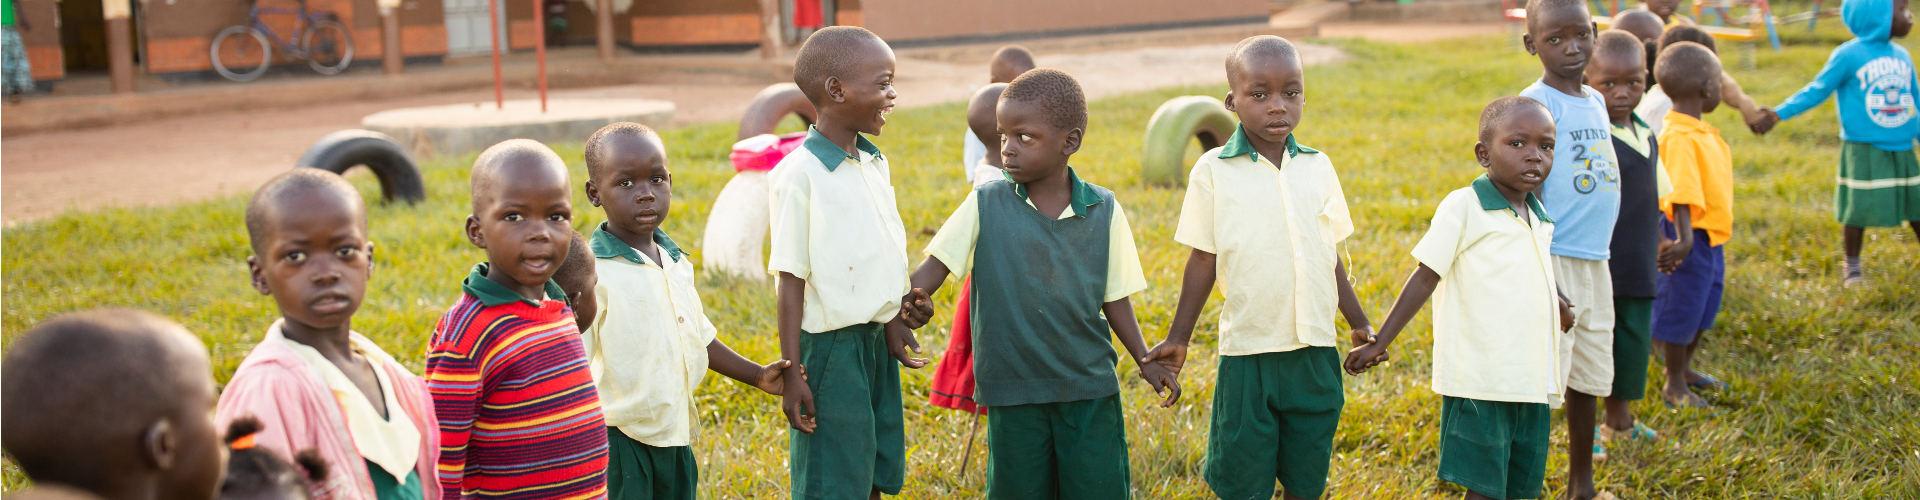 Kinder aus einem ChildFund Projekt in Afrika